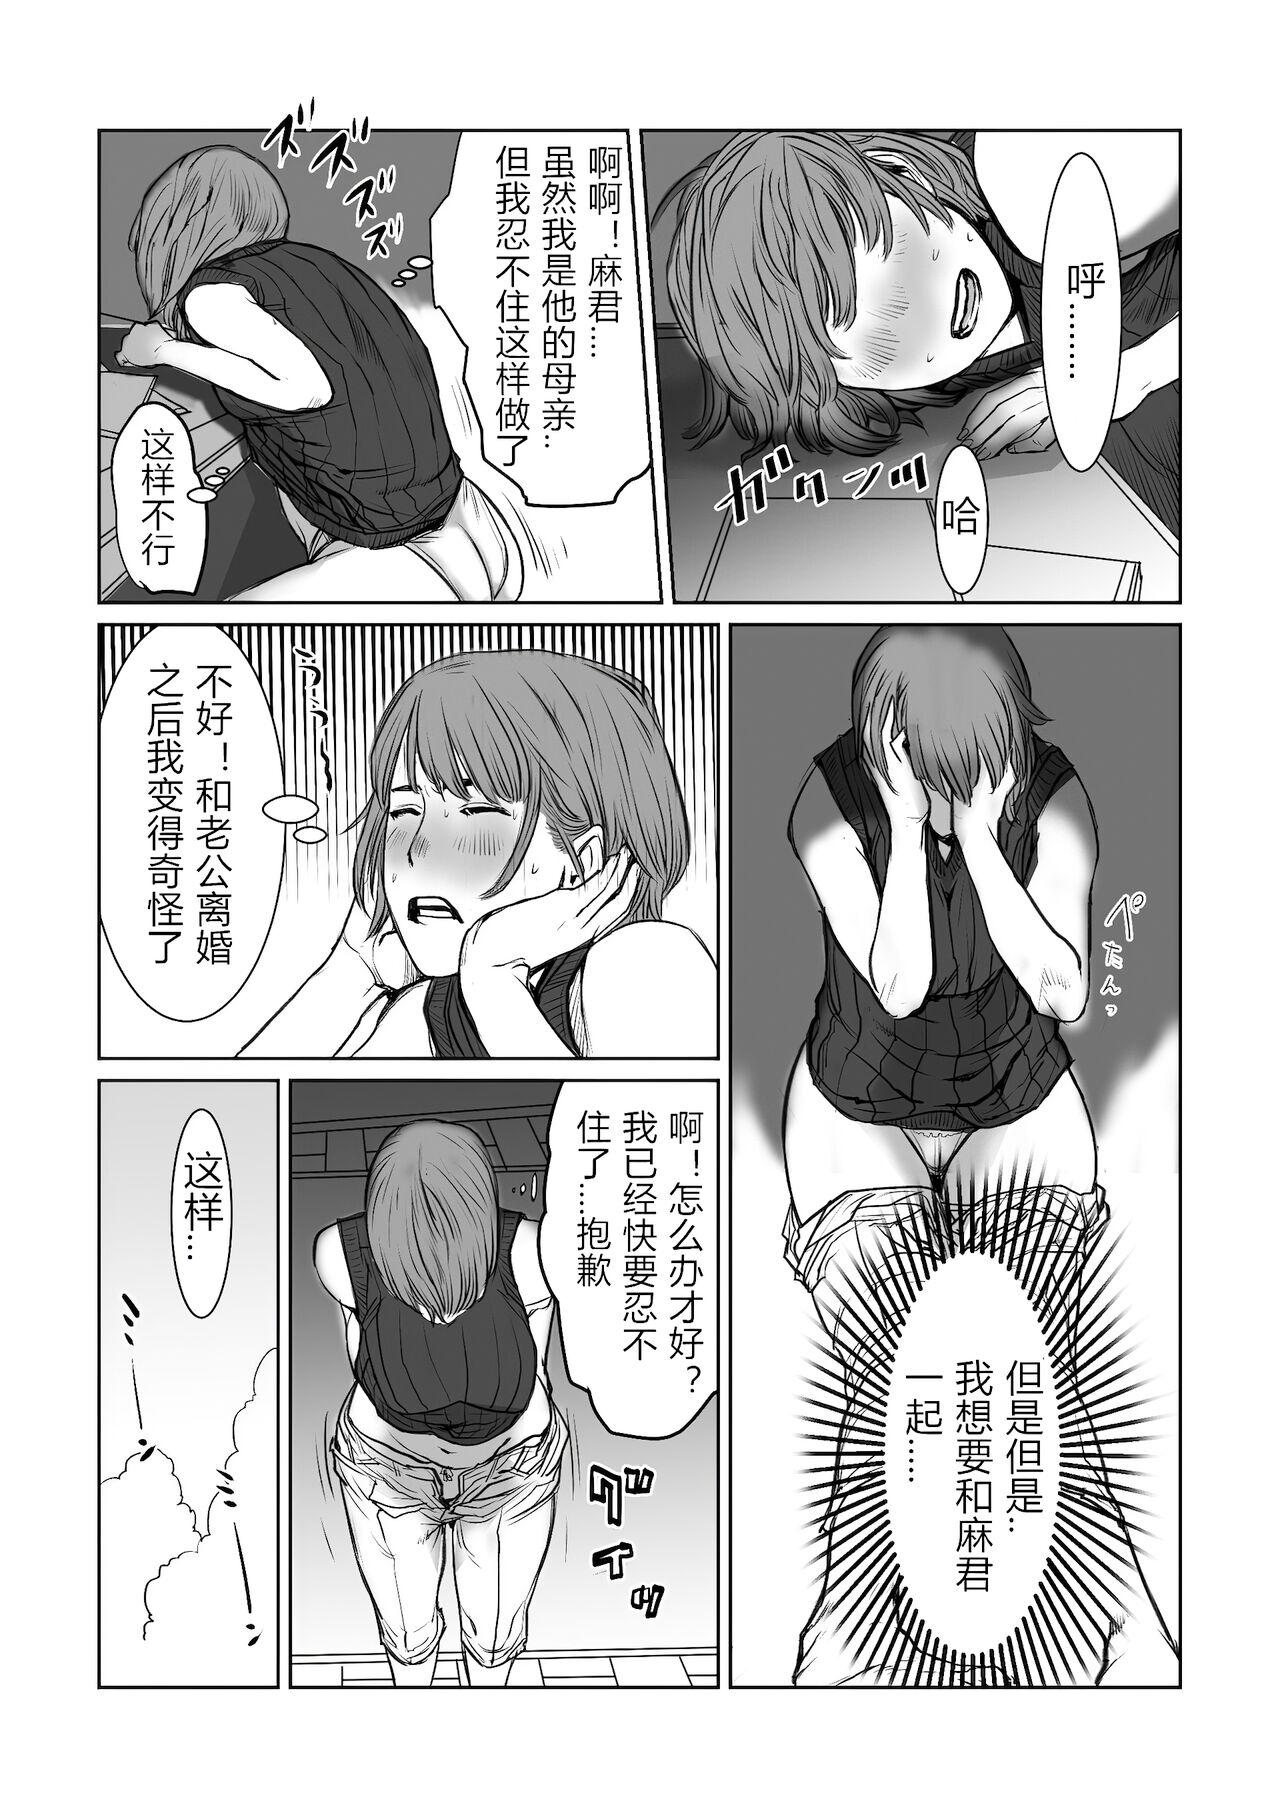 Xxx mama wa moto guradoru boku wa gaman dekinai - Original Police - Page 8